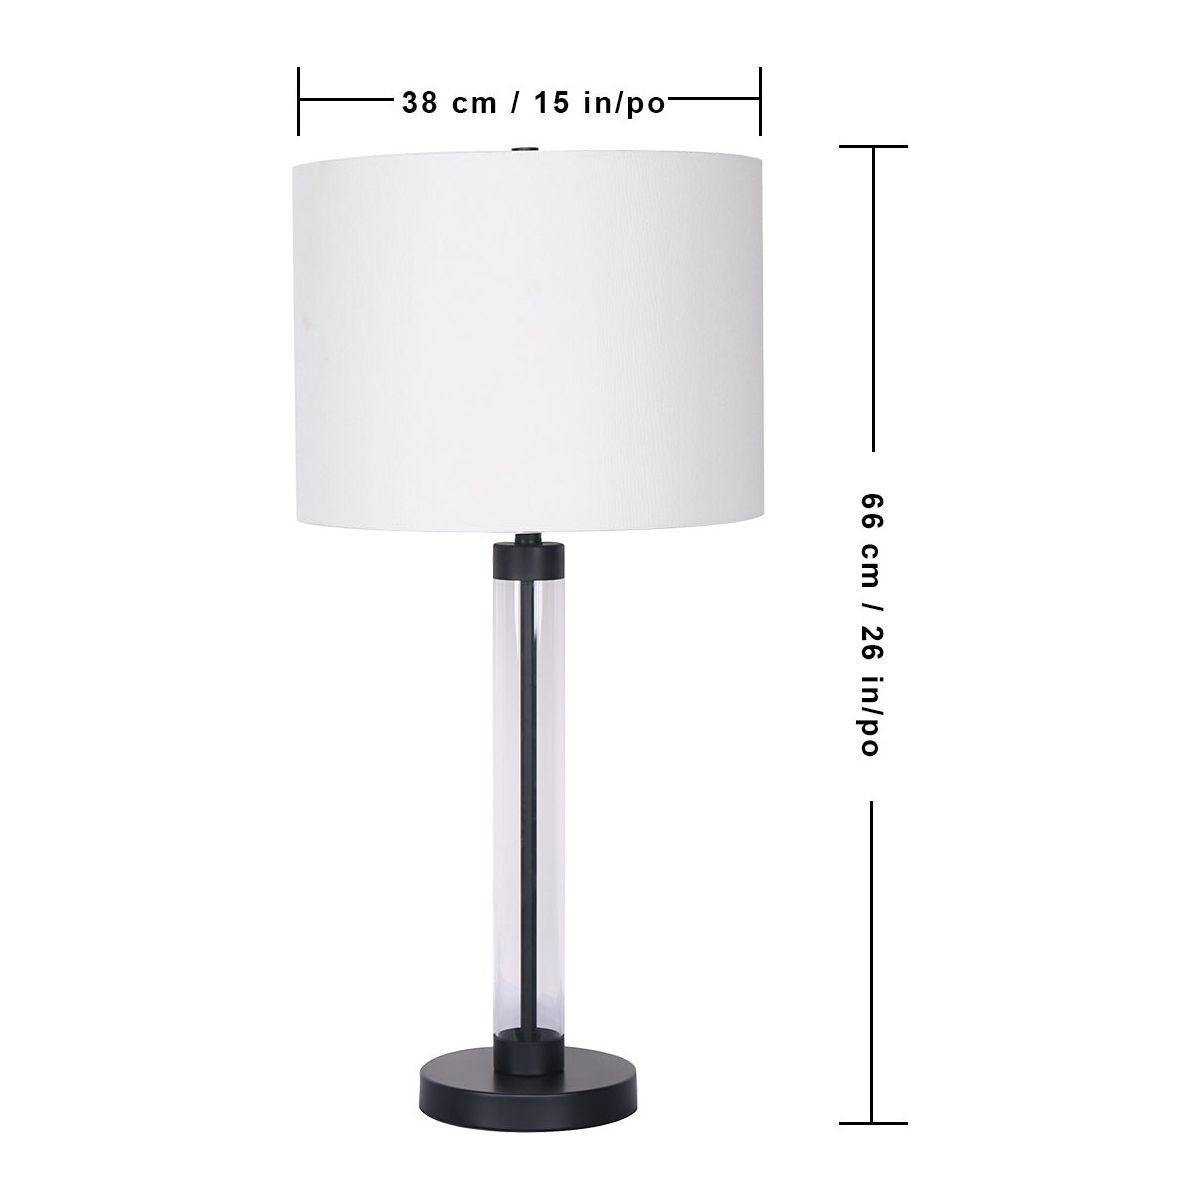 Solis Slim Column Table Lamp